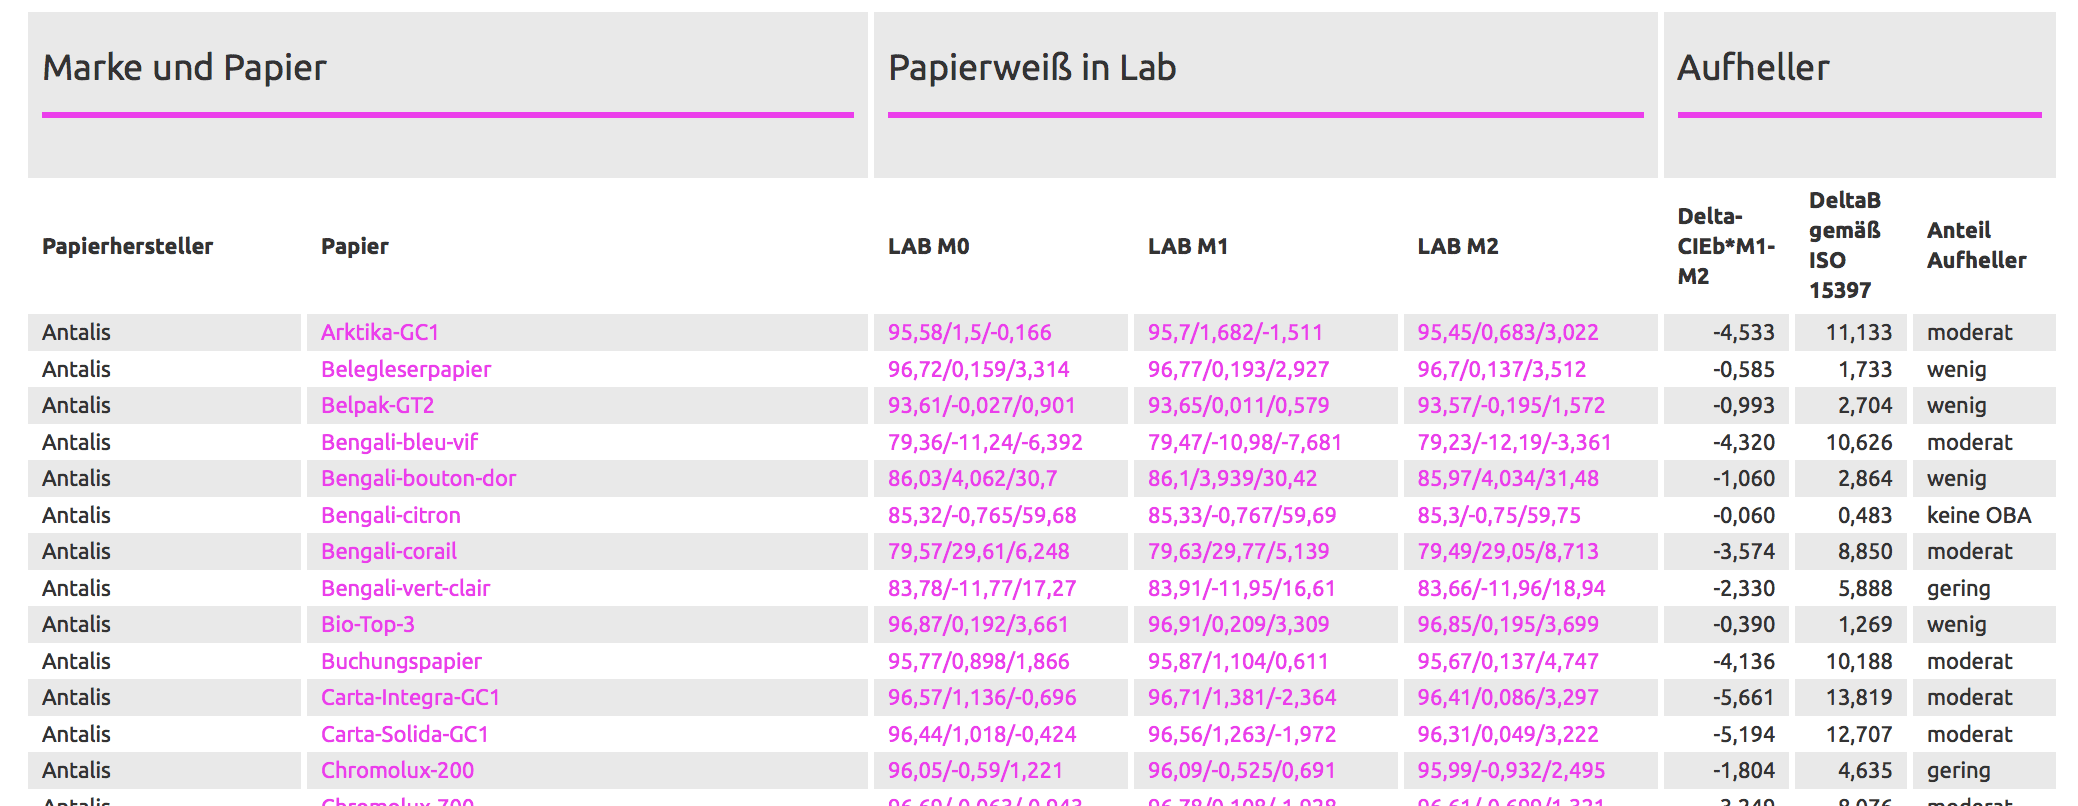 Papierweiß-Tabelle auf proof.de für Papierweiß Werte aller wichtigen Papierhersteller und Online-Druckereien